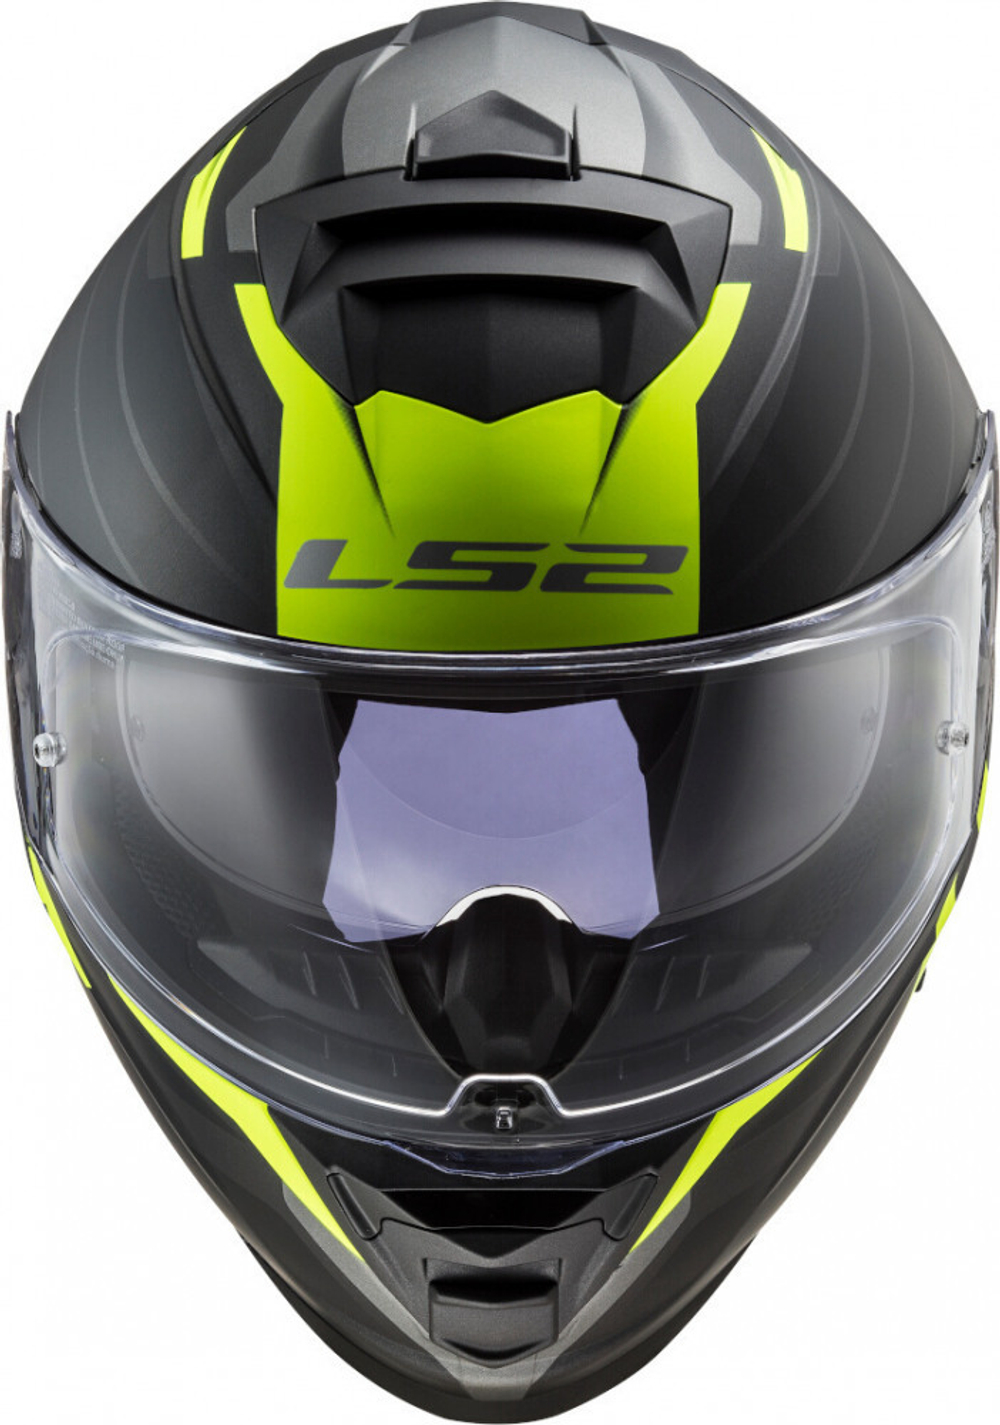 LS2 Мотоциклетный шлем интеграл FF800 STORM FASTER черно-серый матовый